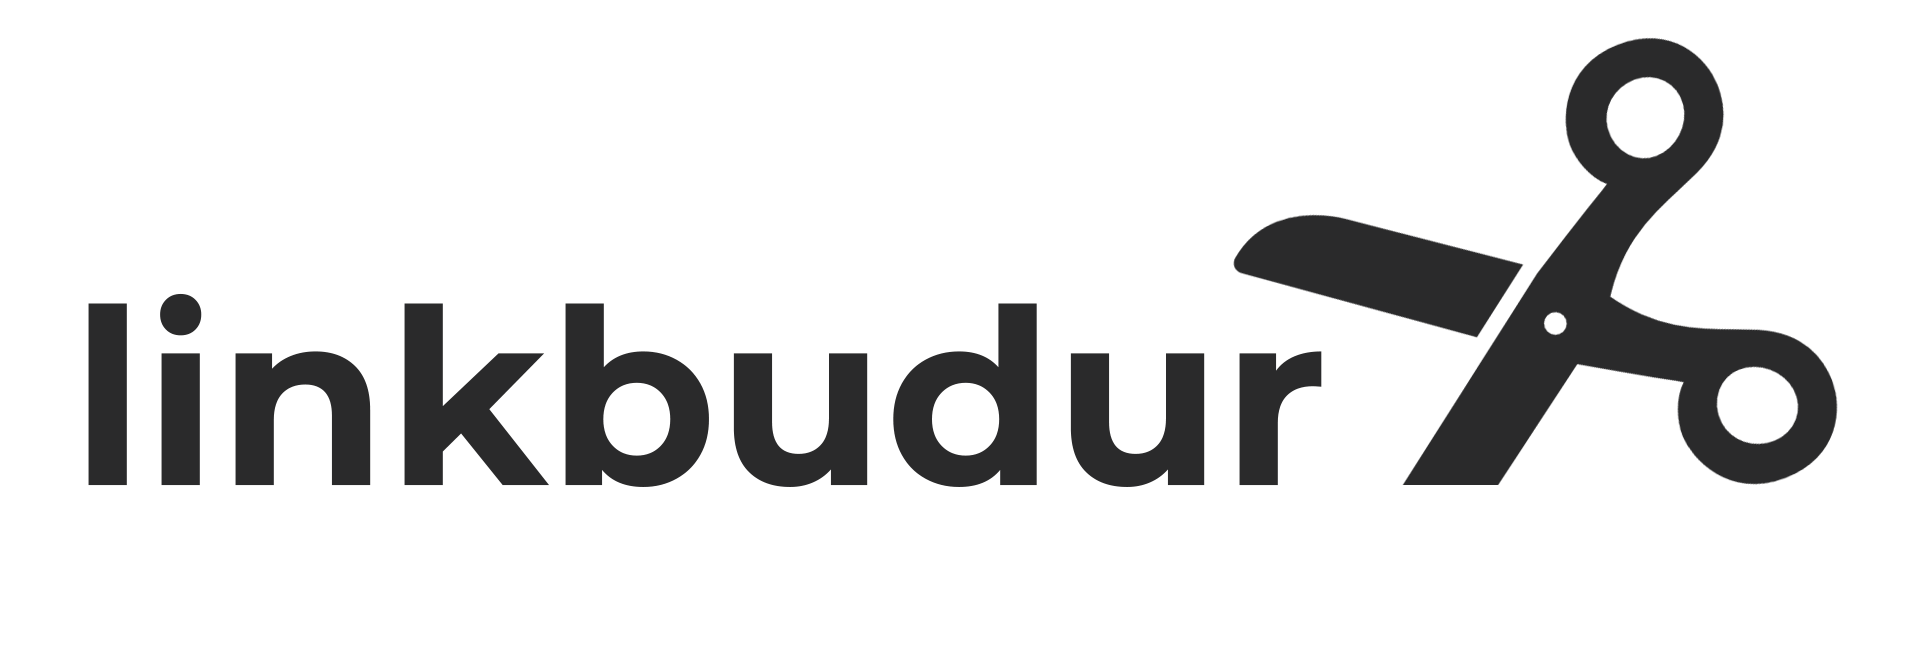 Link Budur - Ücretsiz Link Kısalt Logo